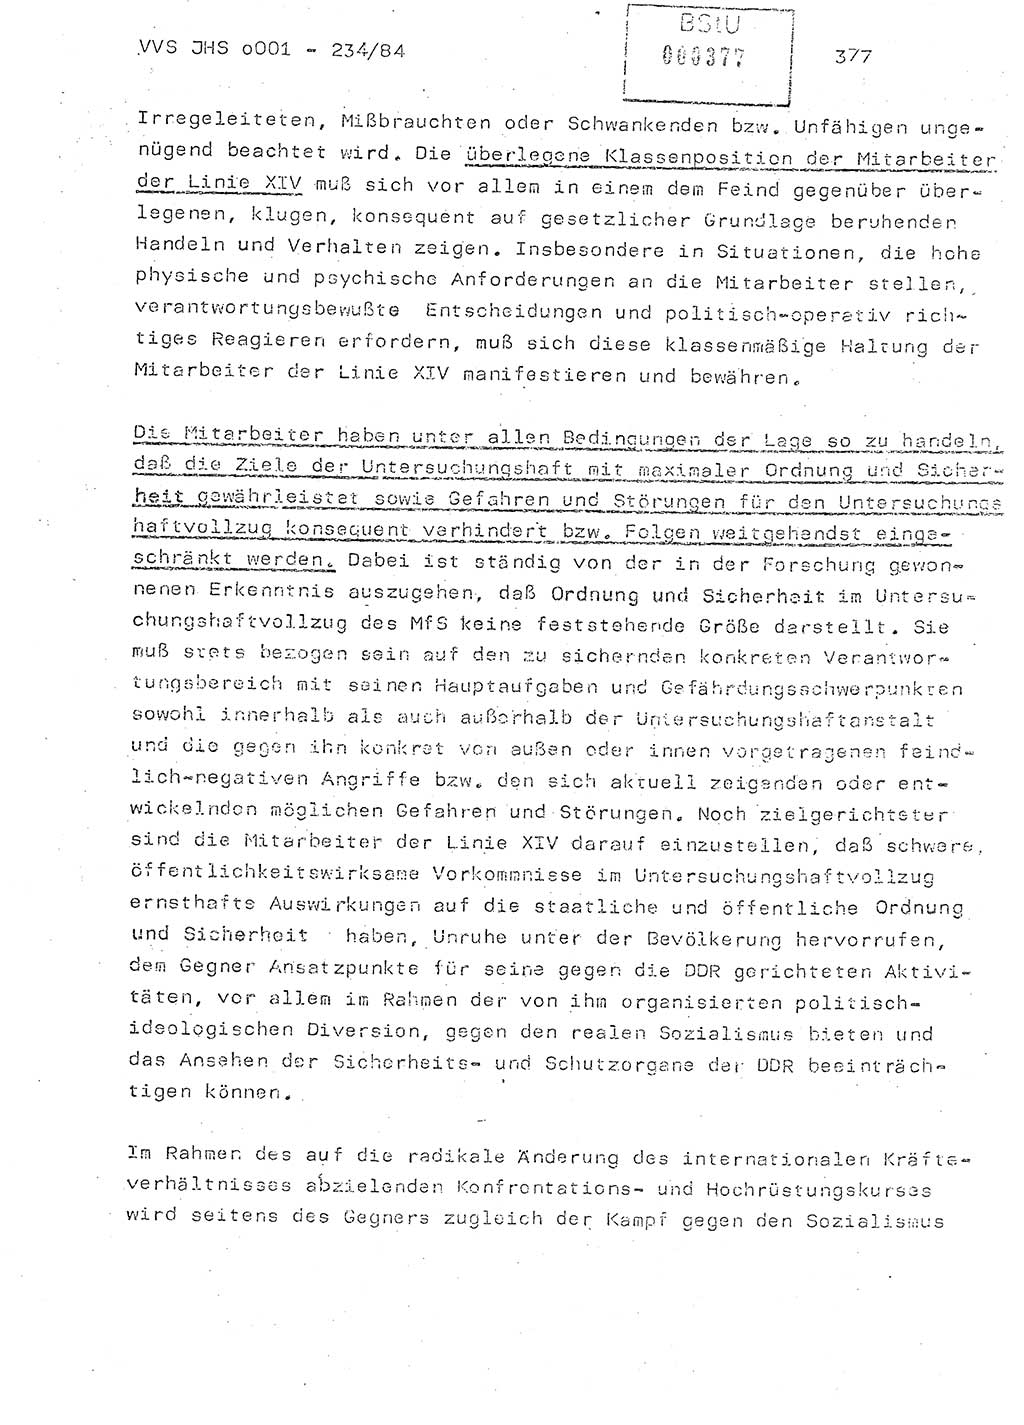 Dissertation Oberst Siegfried Rataizick (Abt. ⅩⅣ), Oberstleutnant Volkmar Heinz (Abt. ⅩⅣ), Oberstleutnant Werner Stein (HA Ⅸ), Hauptmann Heinz Conrad (JHS), Ministerium für Staatssicherheit (MfS) [Deutsche Demokratische Republik (DDR)], Juristische Hochschule (JHS), Vertrauliche Verschlußsache (VVS) o001-234/84, Potsdam 1984, Seite 377 (Diss. MfS DDR JHS VVS o001-234/84 1984, S. 377)